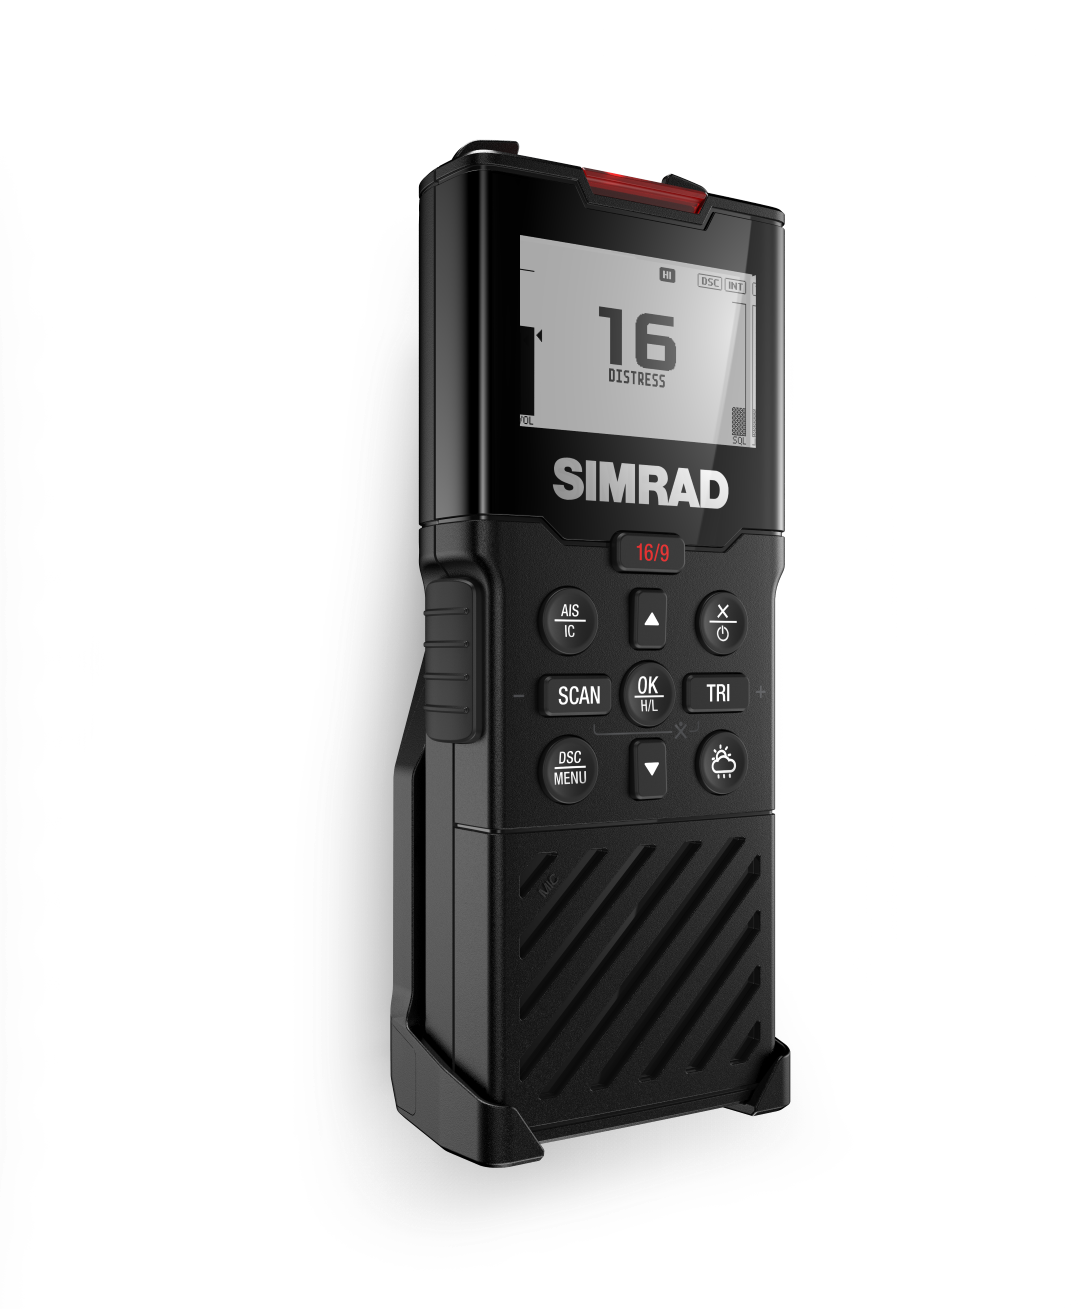 Simrad HS40 drahtlose Fernbedienung für RS40 oder RS100-UKW-Funkgerät